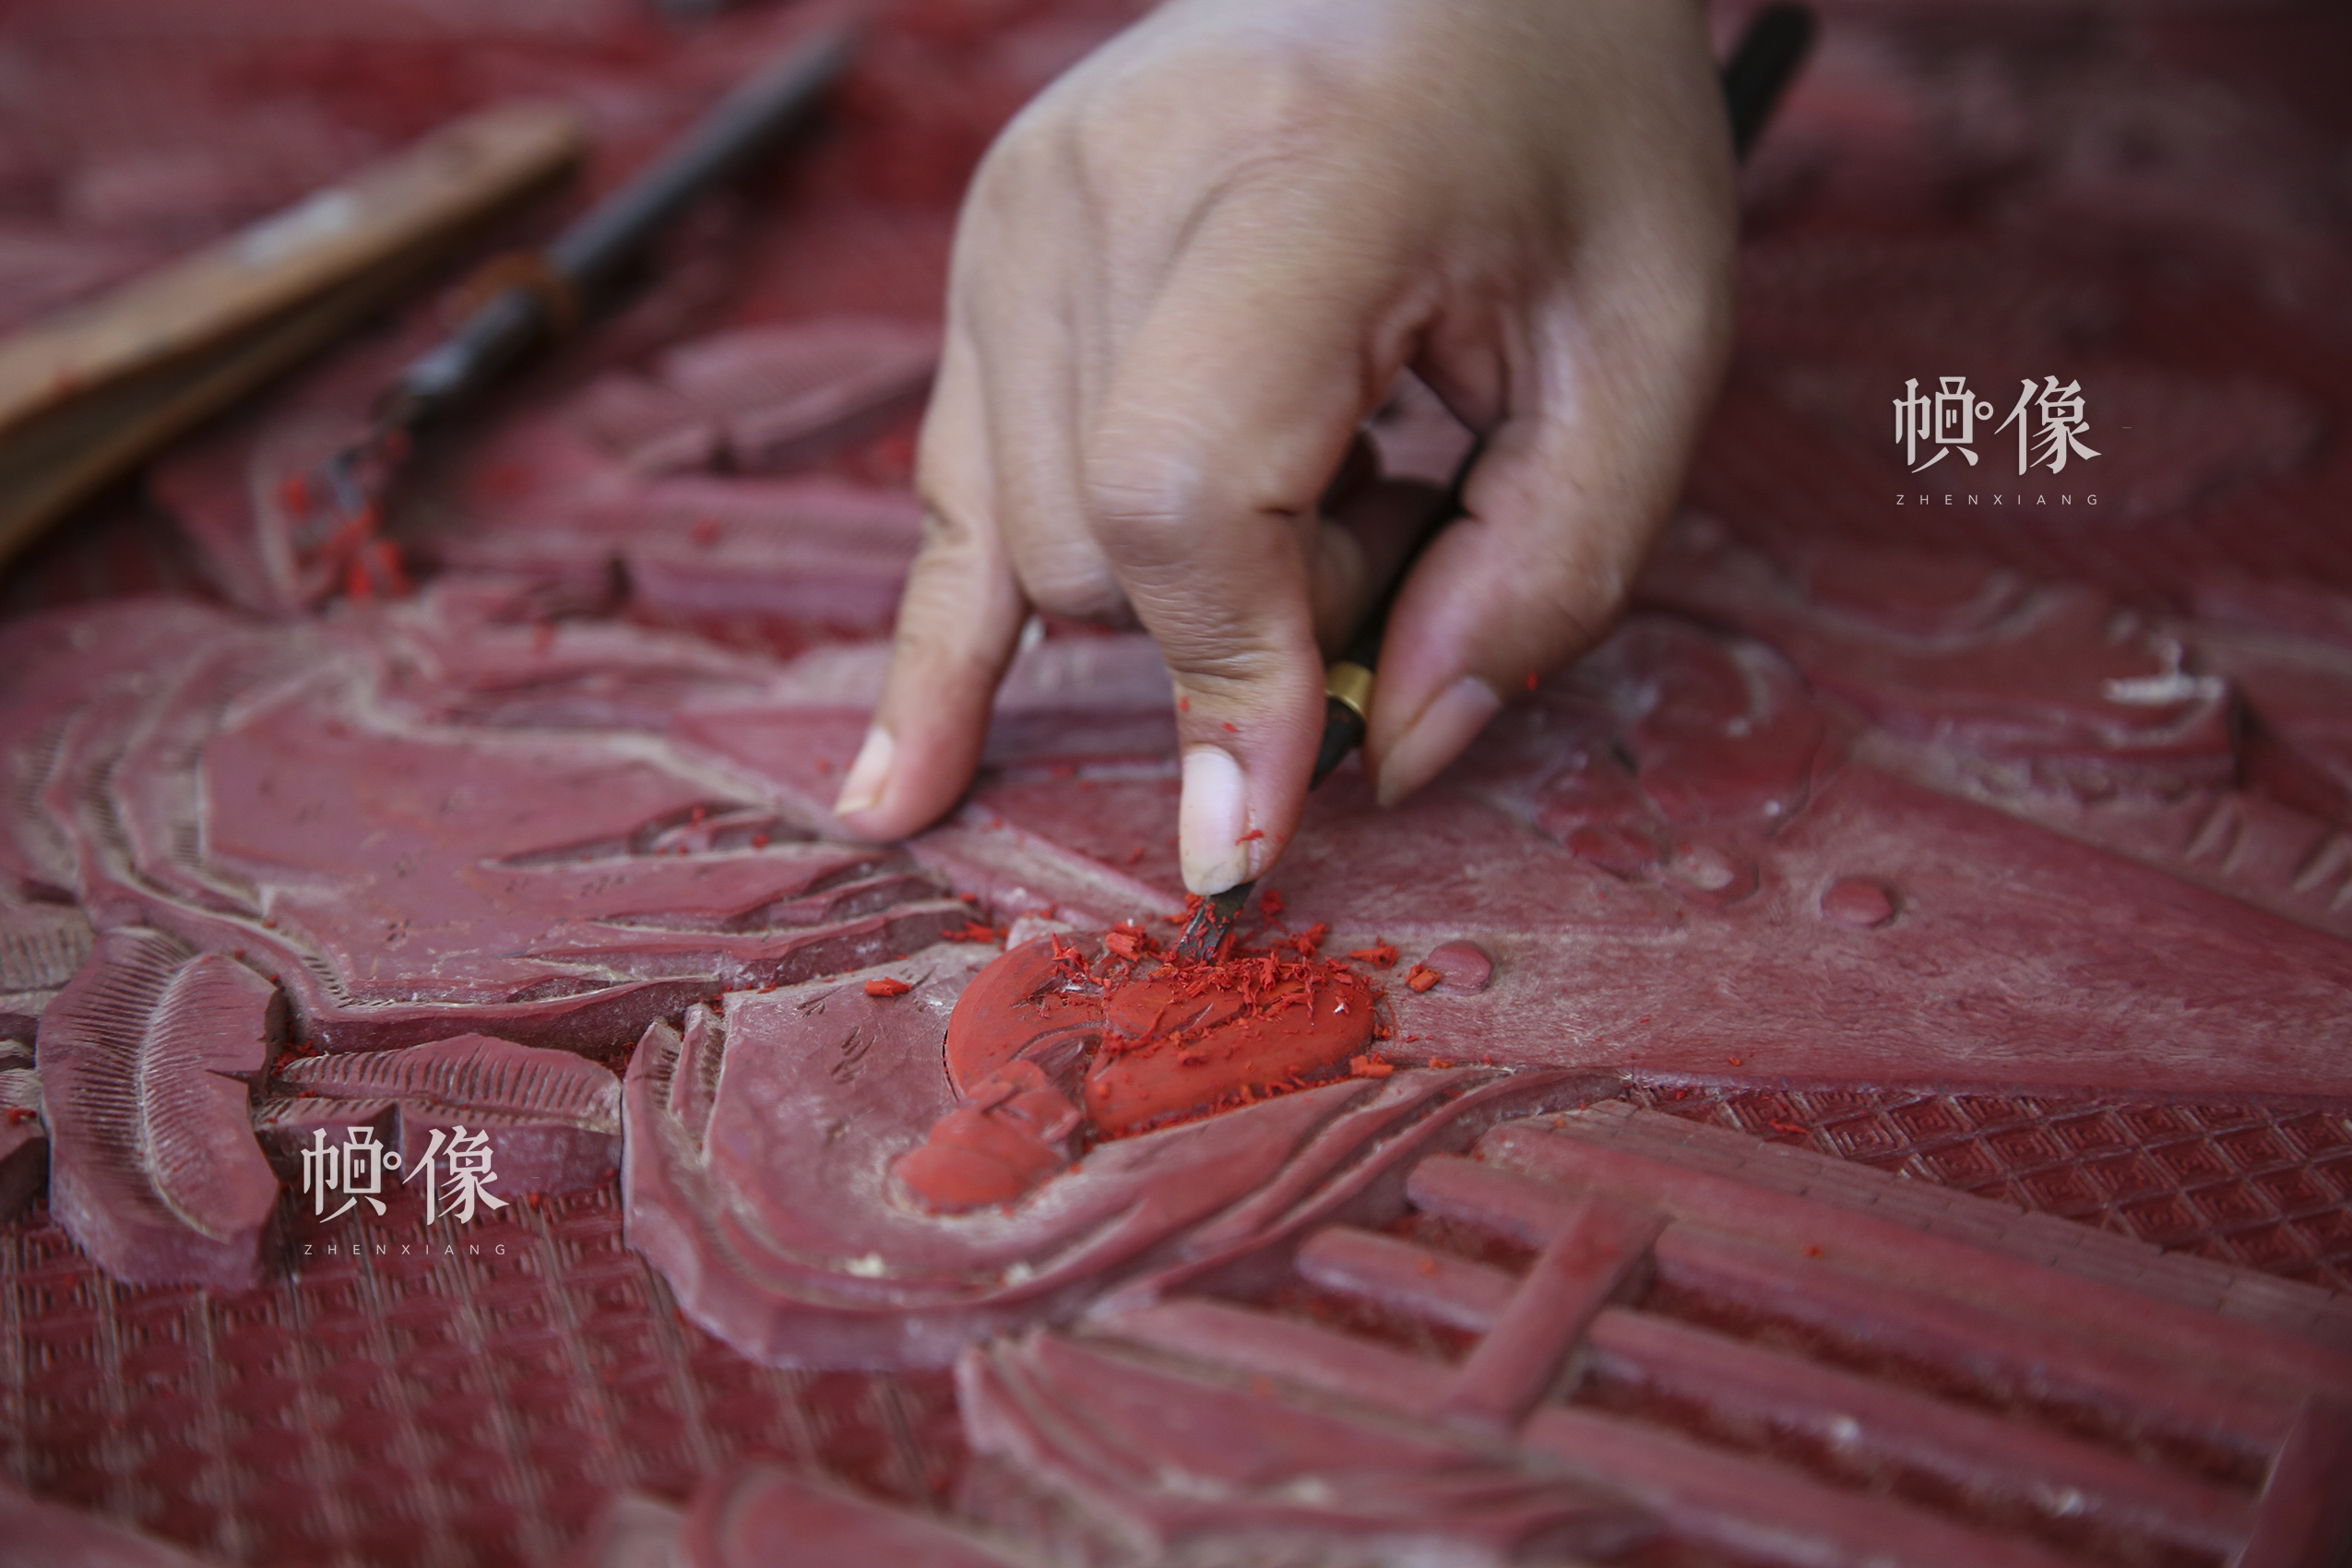 2017年9月20日，“明古齋”雕漆工廠車間，工作人員製作雕漆作品。 中國網記者 黃富友 攝 